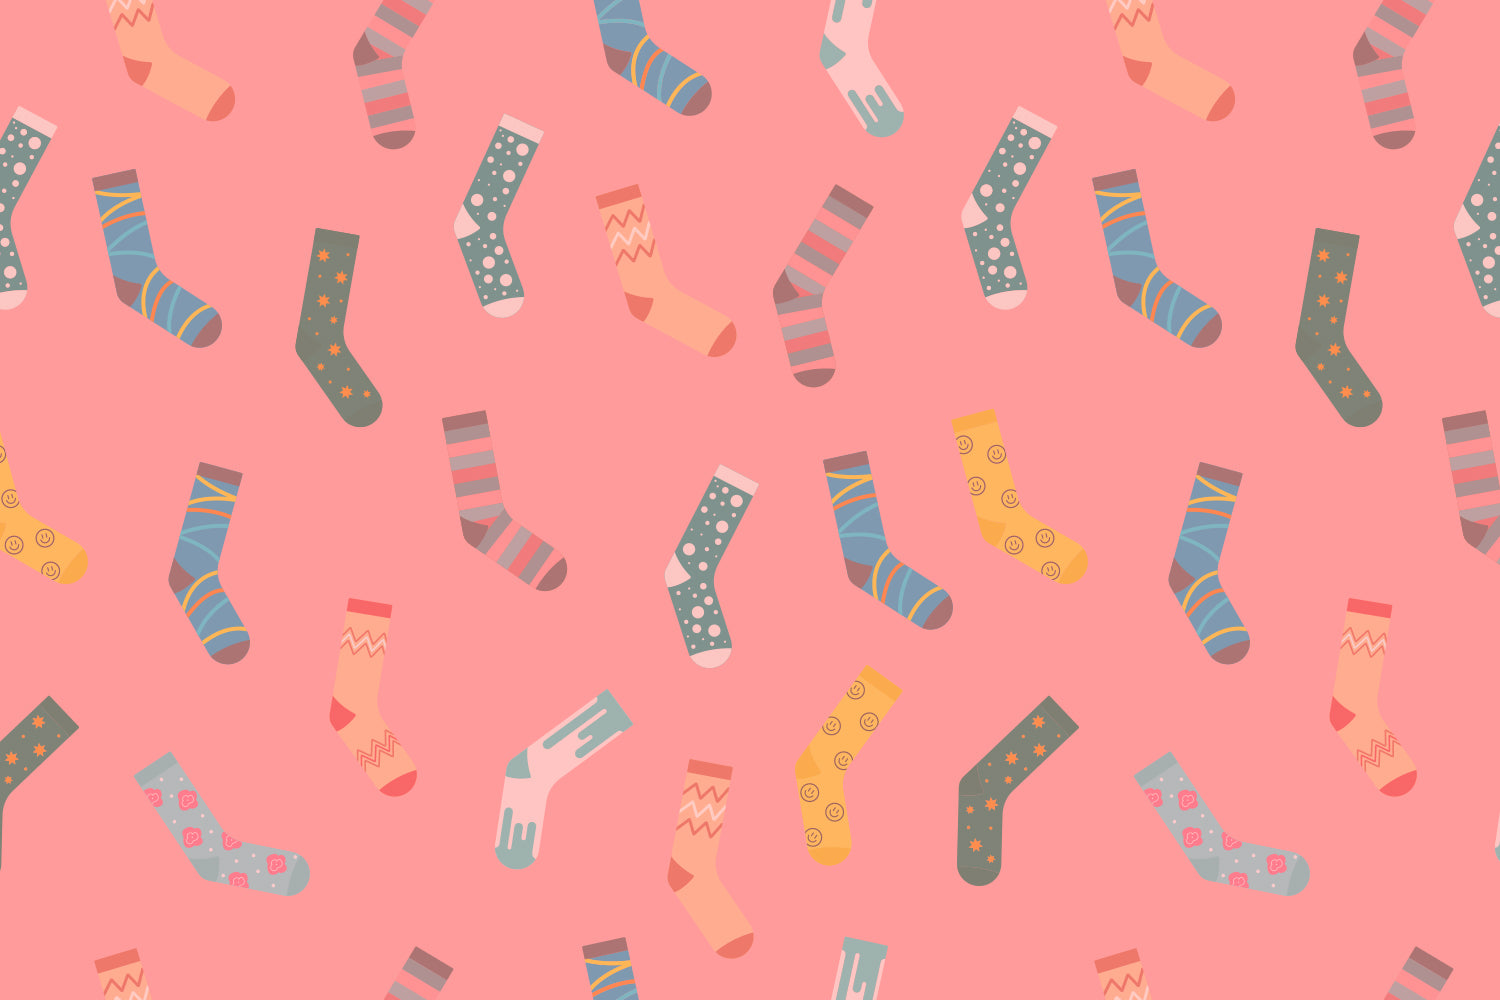 Buy New Arrival Socks - Latest Novelty, Funny, Cotton Made Socks for men, women and kids